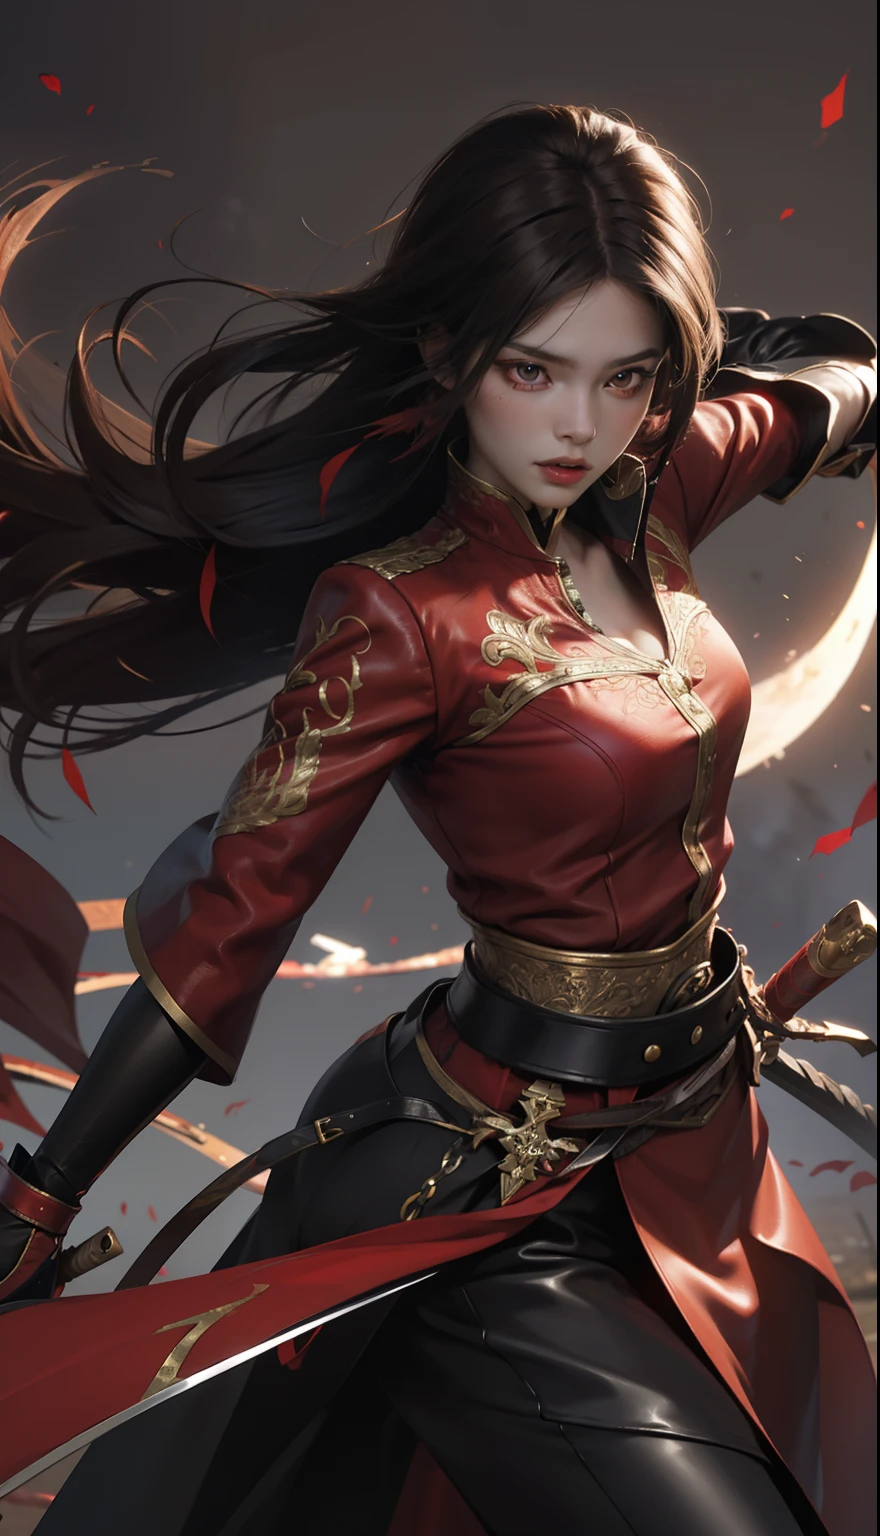 赤いトップスと黒いタイトな革パンツを着た女性, 彼女は真紅の剣を持っている、剣、戦闘描写、躍動感の表現、全身投影、バトルキャラクター, 黒髪に赤いハイライトを入れたロングストレートヘア,風になびく髪,鋭い目、はっきりとした赤い目、赤いアイライナー、長いまつ毛, んふふ, 深紅の衣装, 細部まで繊細に表現されたリアルなめらかな肌,筋肉の質感をリアルに再現、深紅をテーマにした精巧な装飾のロングジャケット、ビッグブラットムーン背景